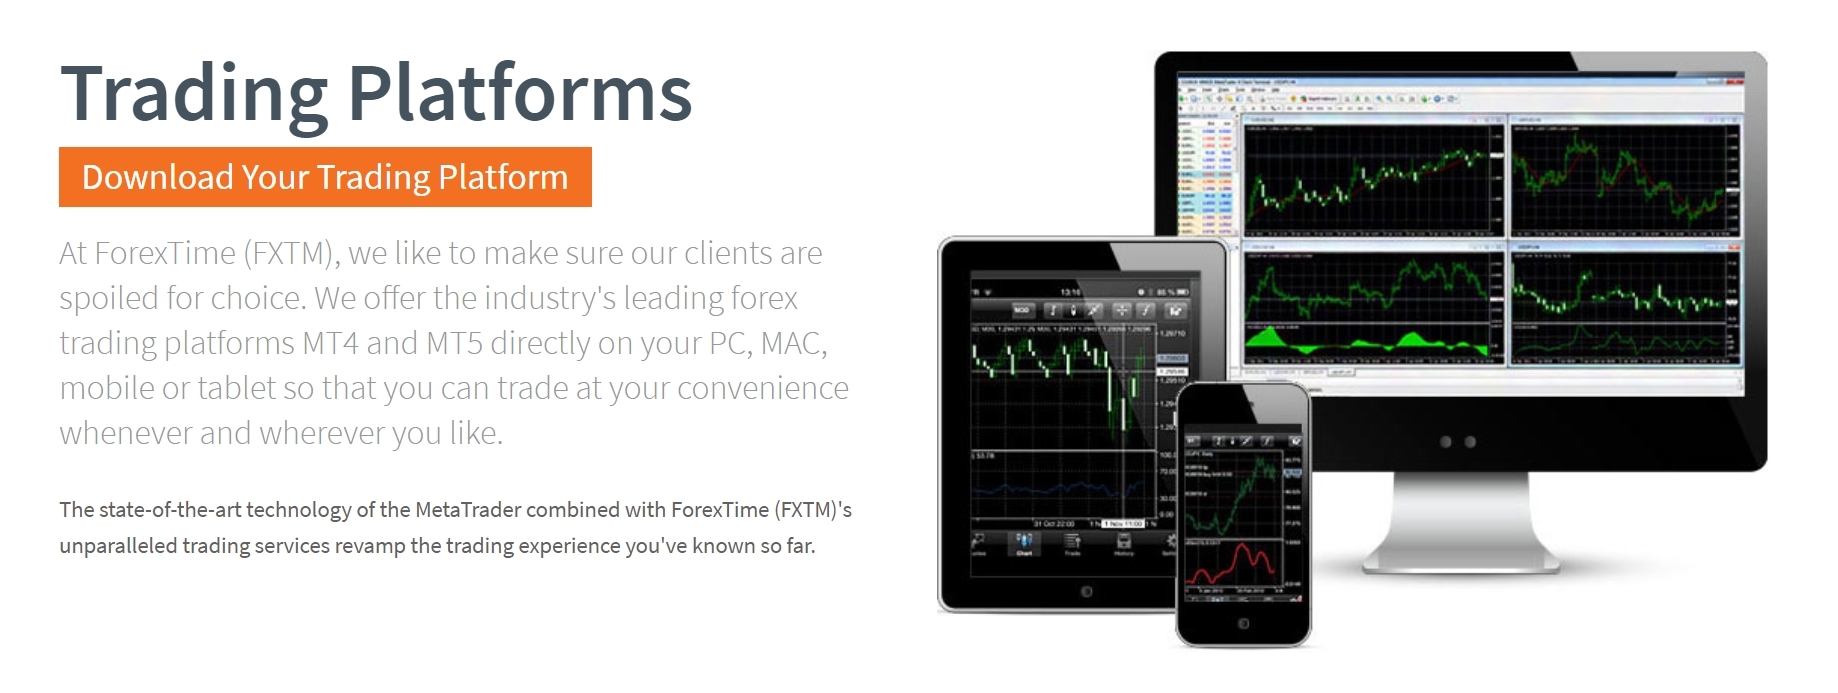 FXTM Trading Platforms